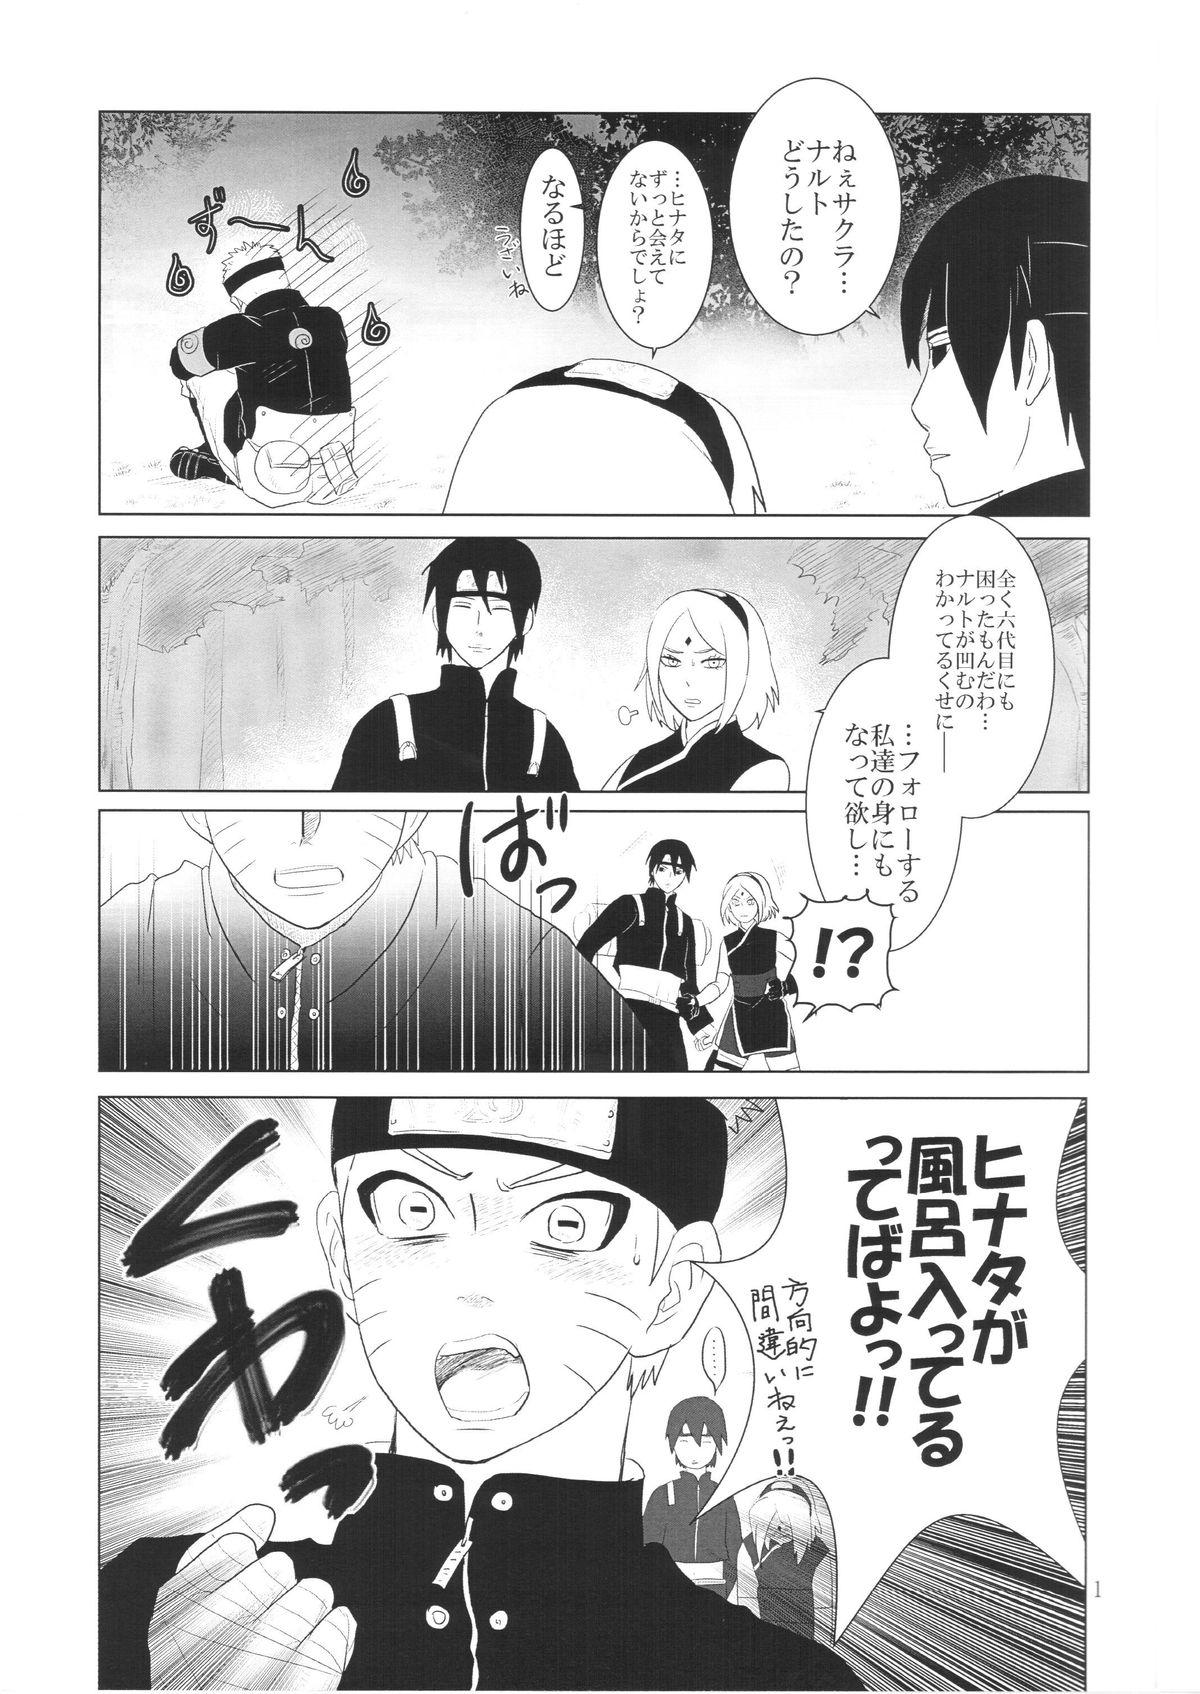 Older Kanata no omoi wa ryoute ni tokeru - Naruto Squirters - Page 4